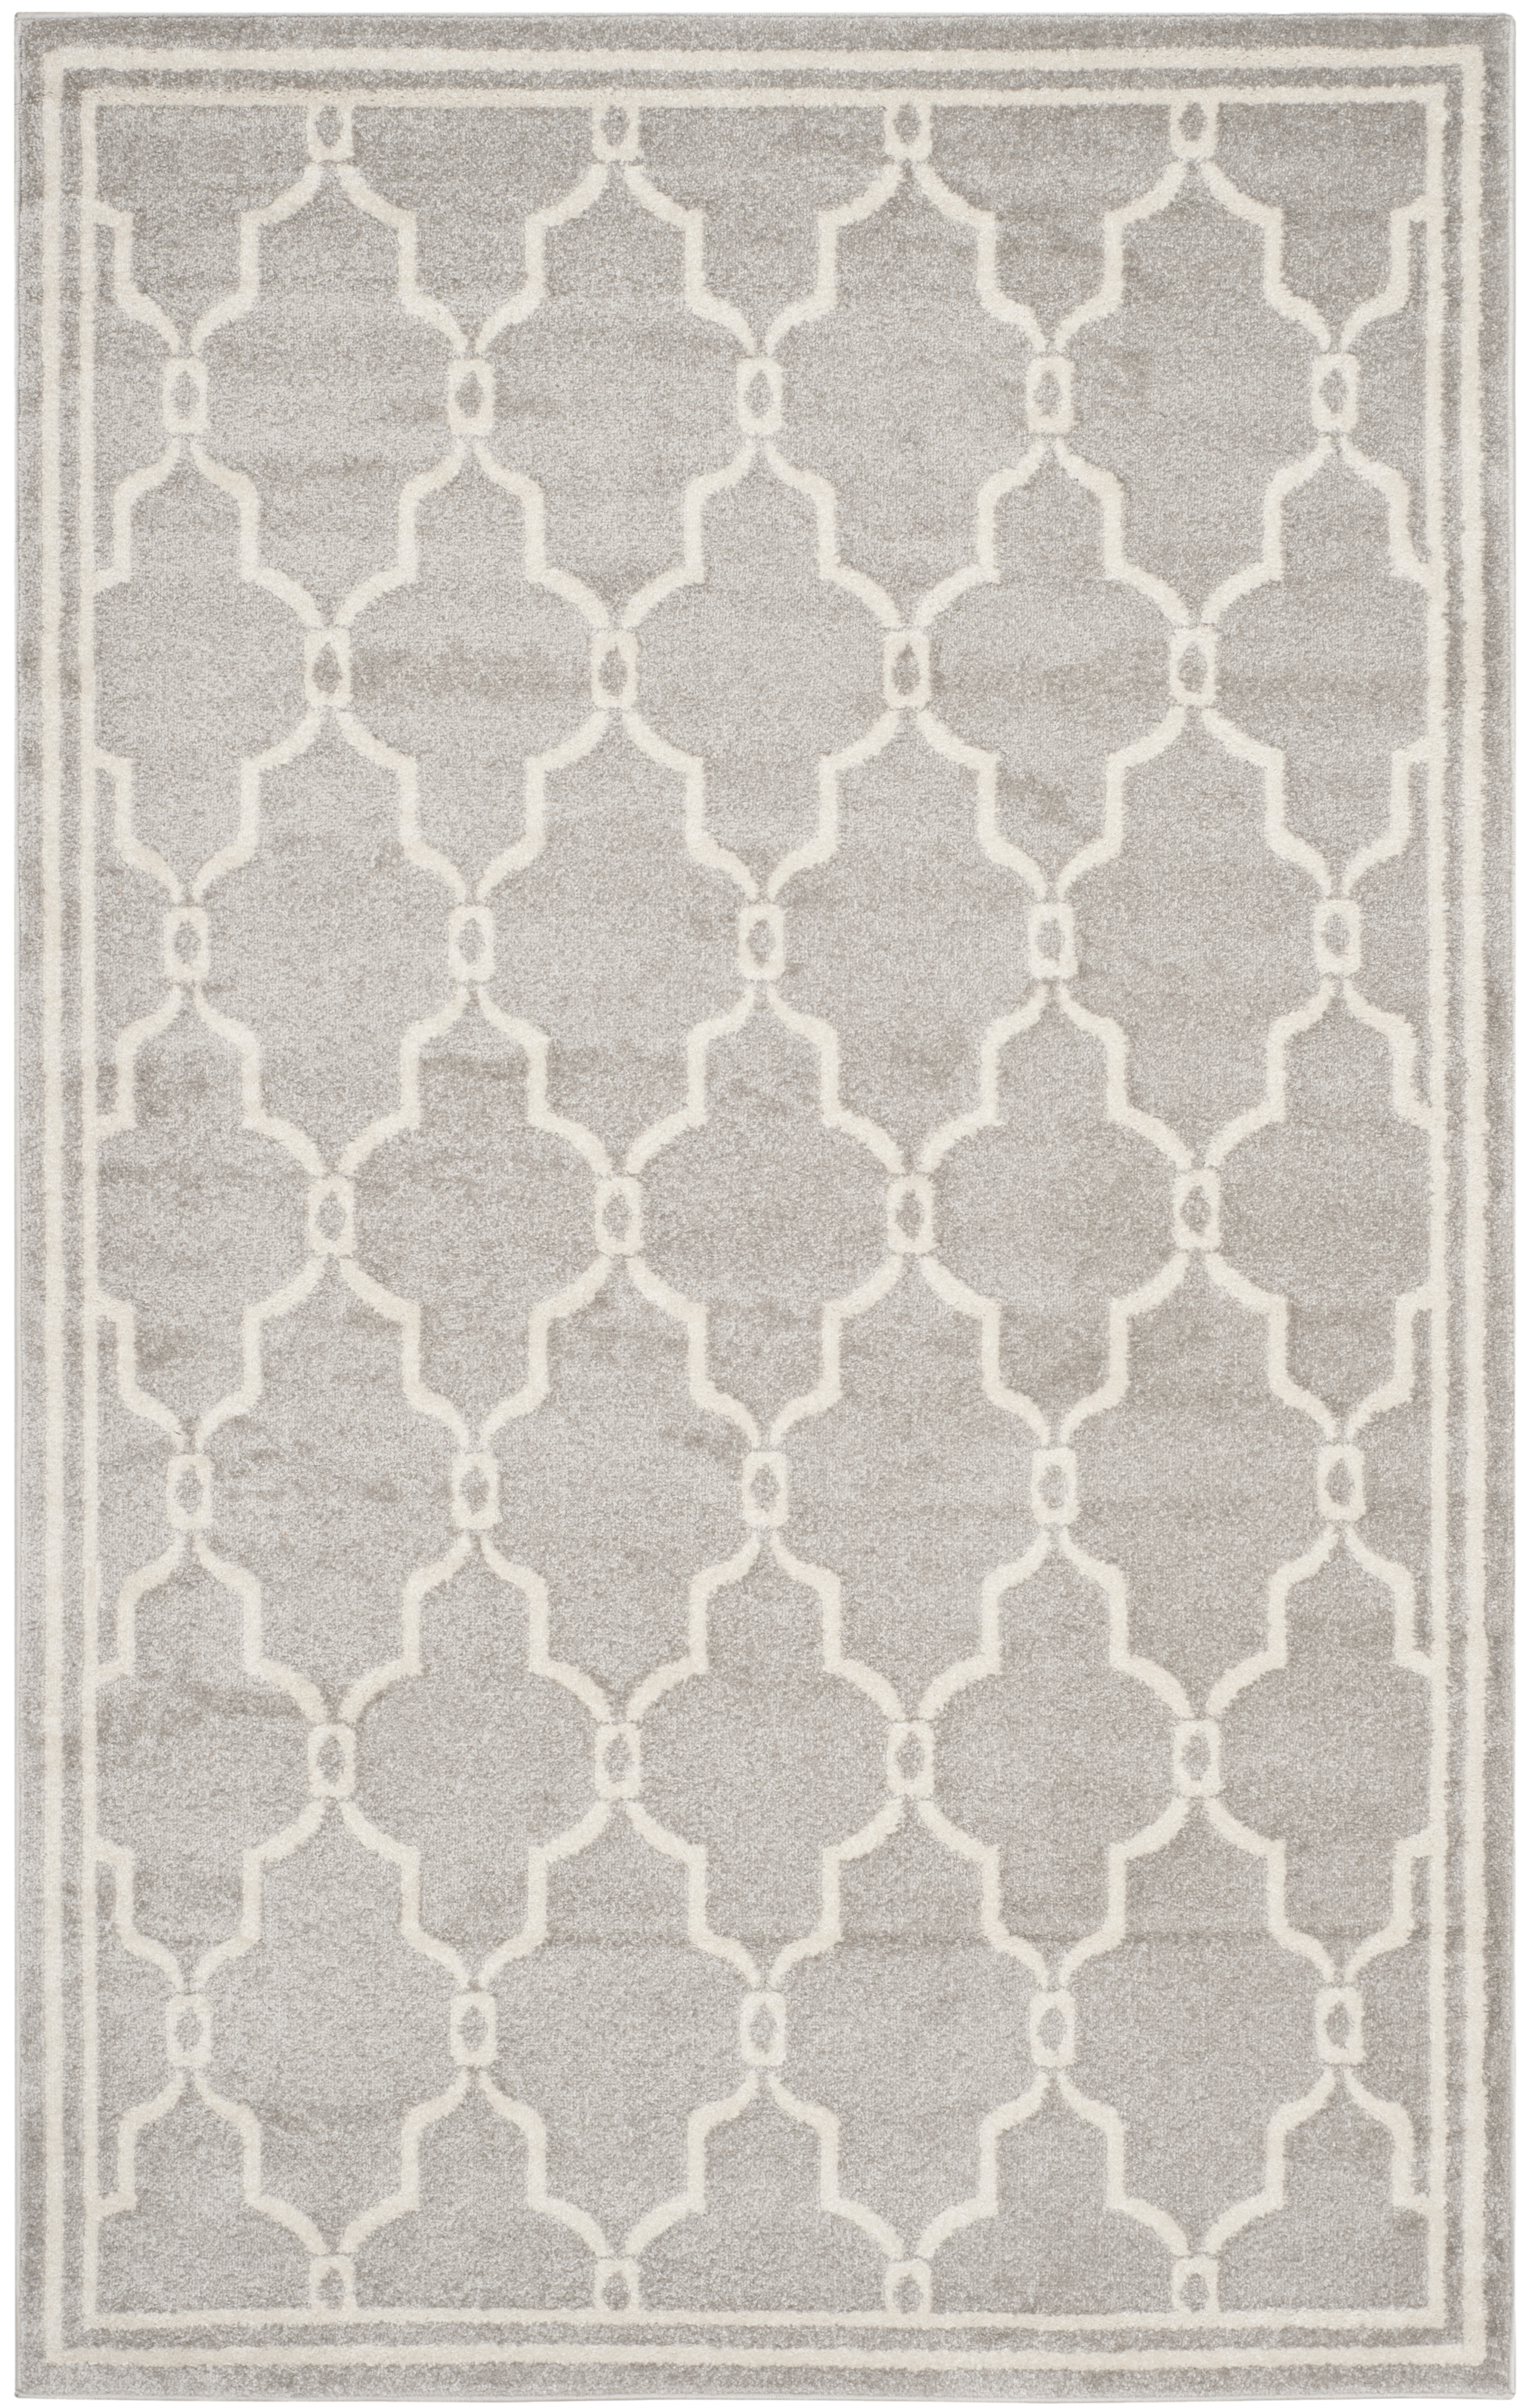 Tapis interieur / exterieur en gris clair & ivoire, 152 x 244 cm